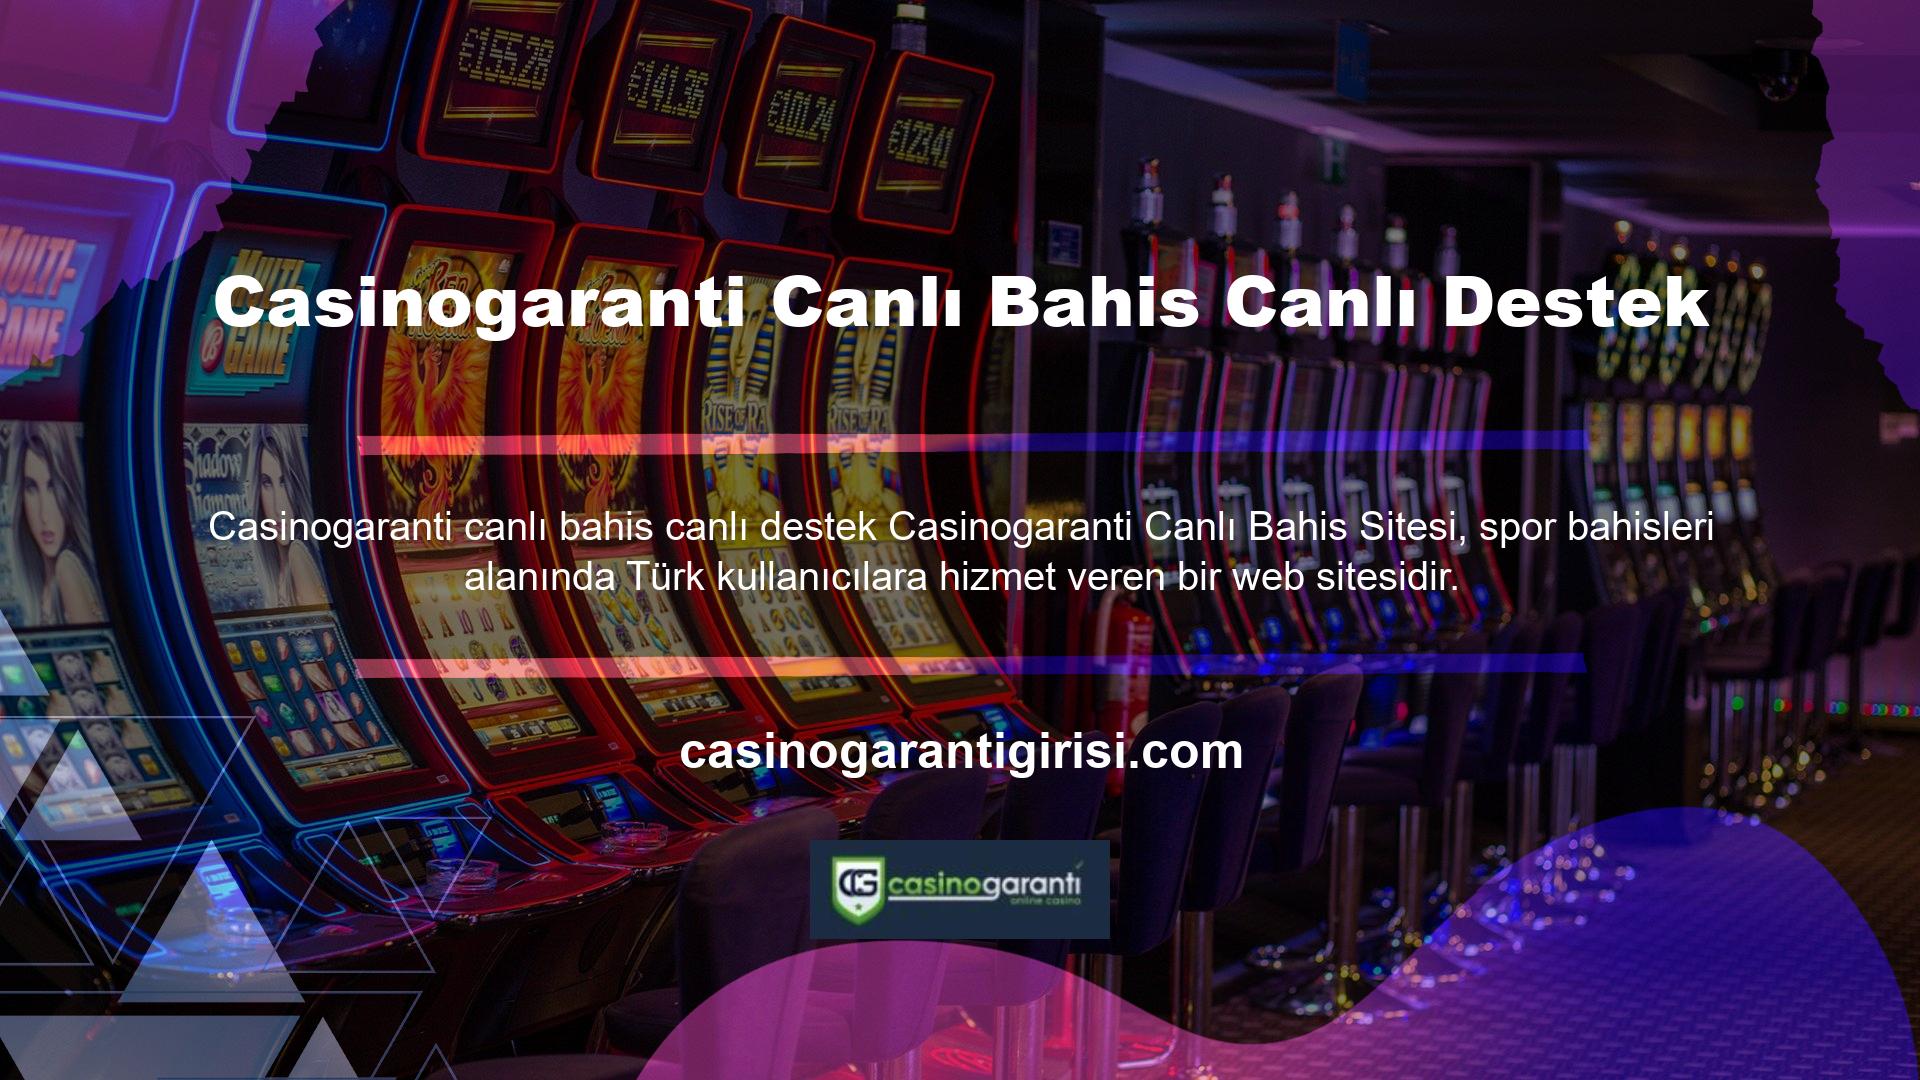 Casinogaranti Canlı Bahis Canlı Destek, spor bahislerinin yanı sıra kullanıcılarına casino oyun hizmetleri de sunmaktadır